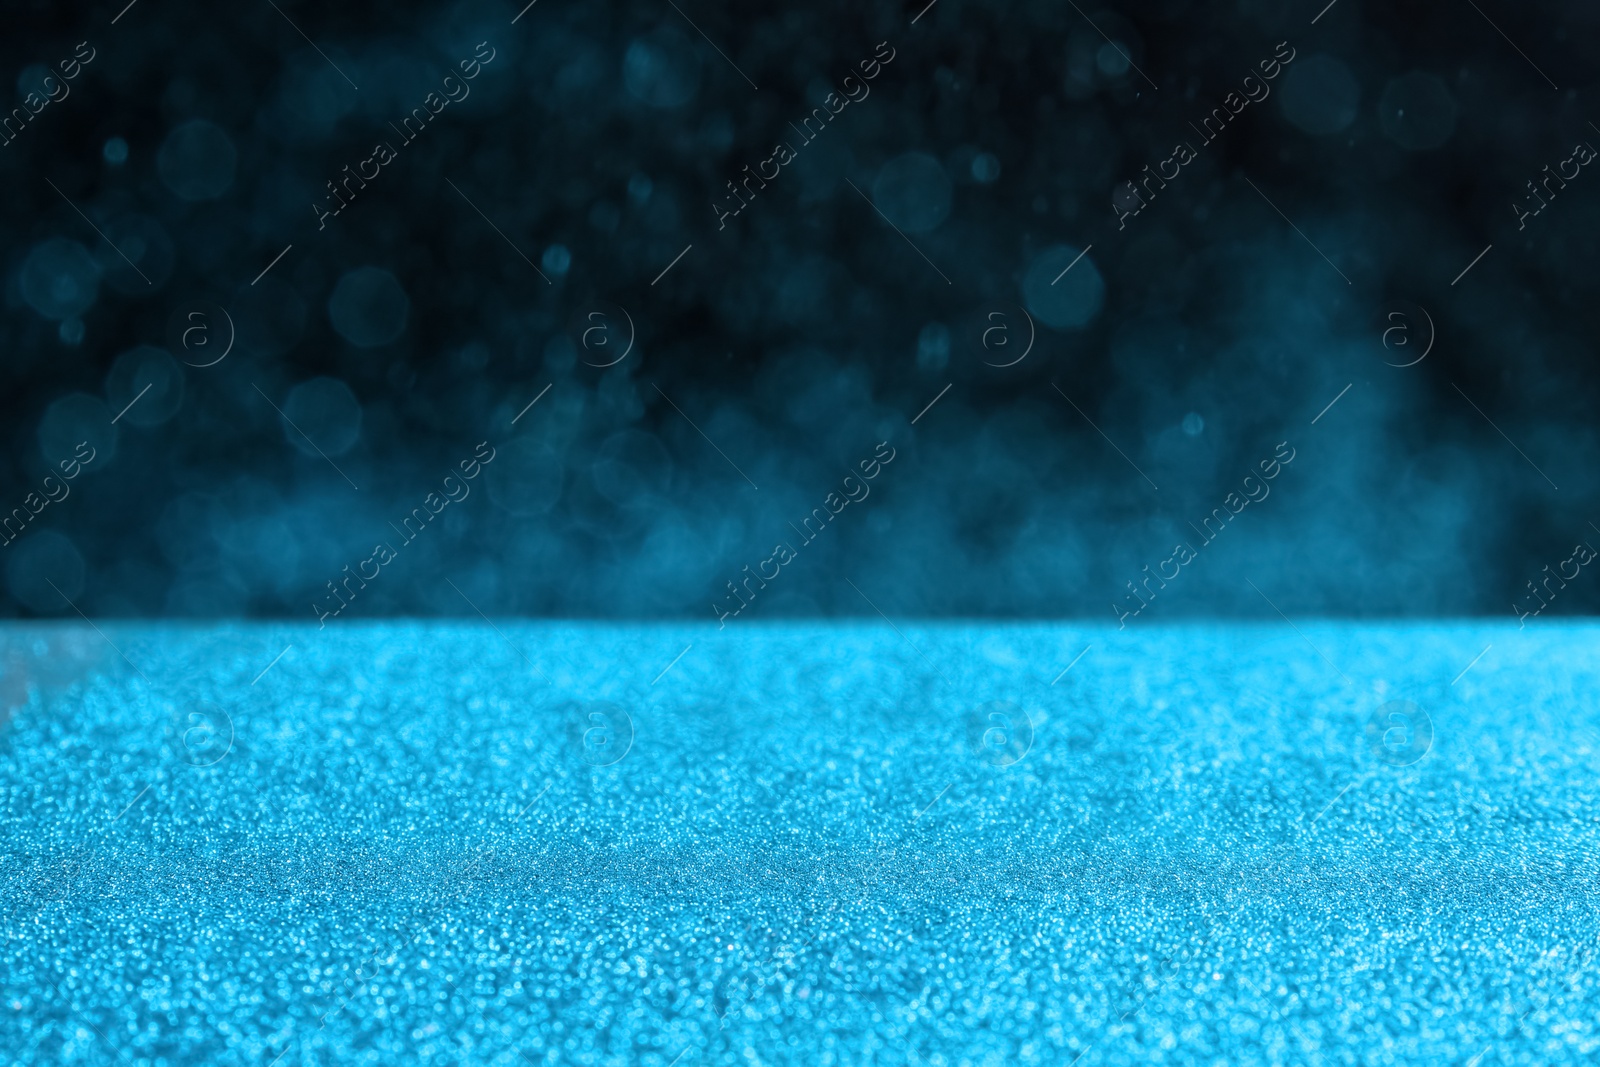 Photo of Glitter on table against dark background. Bokeh effect